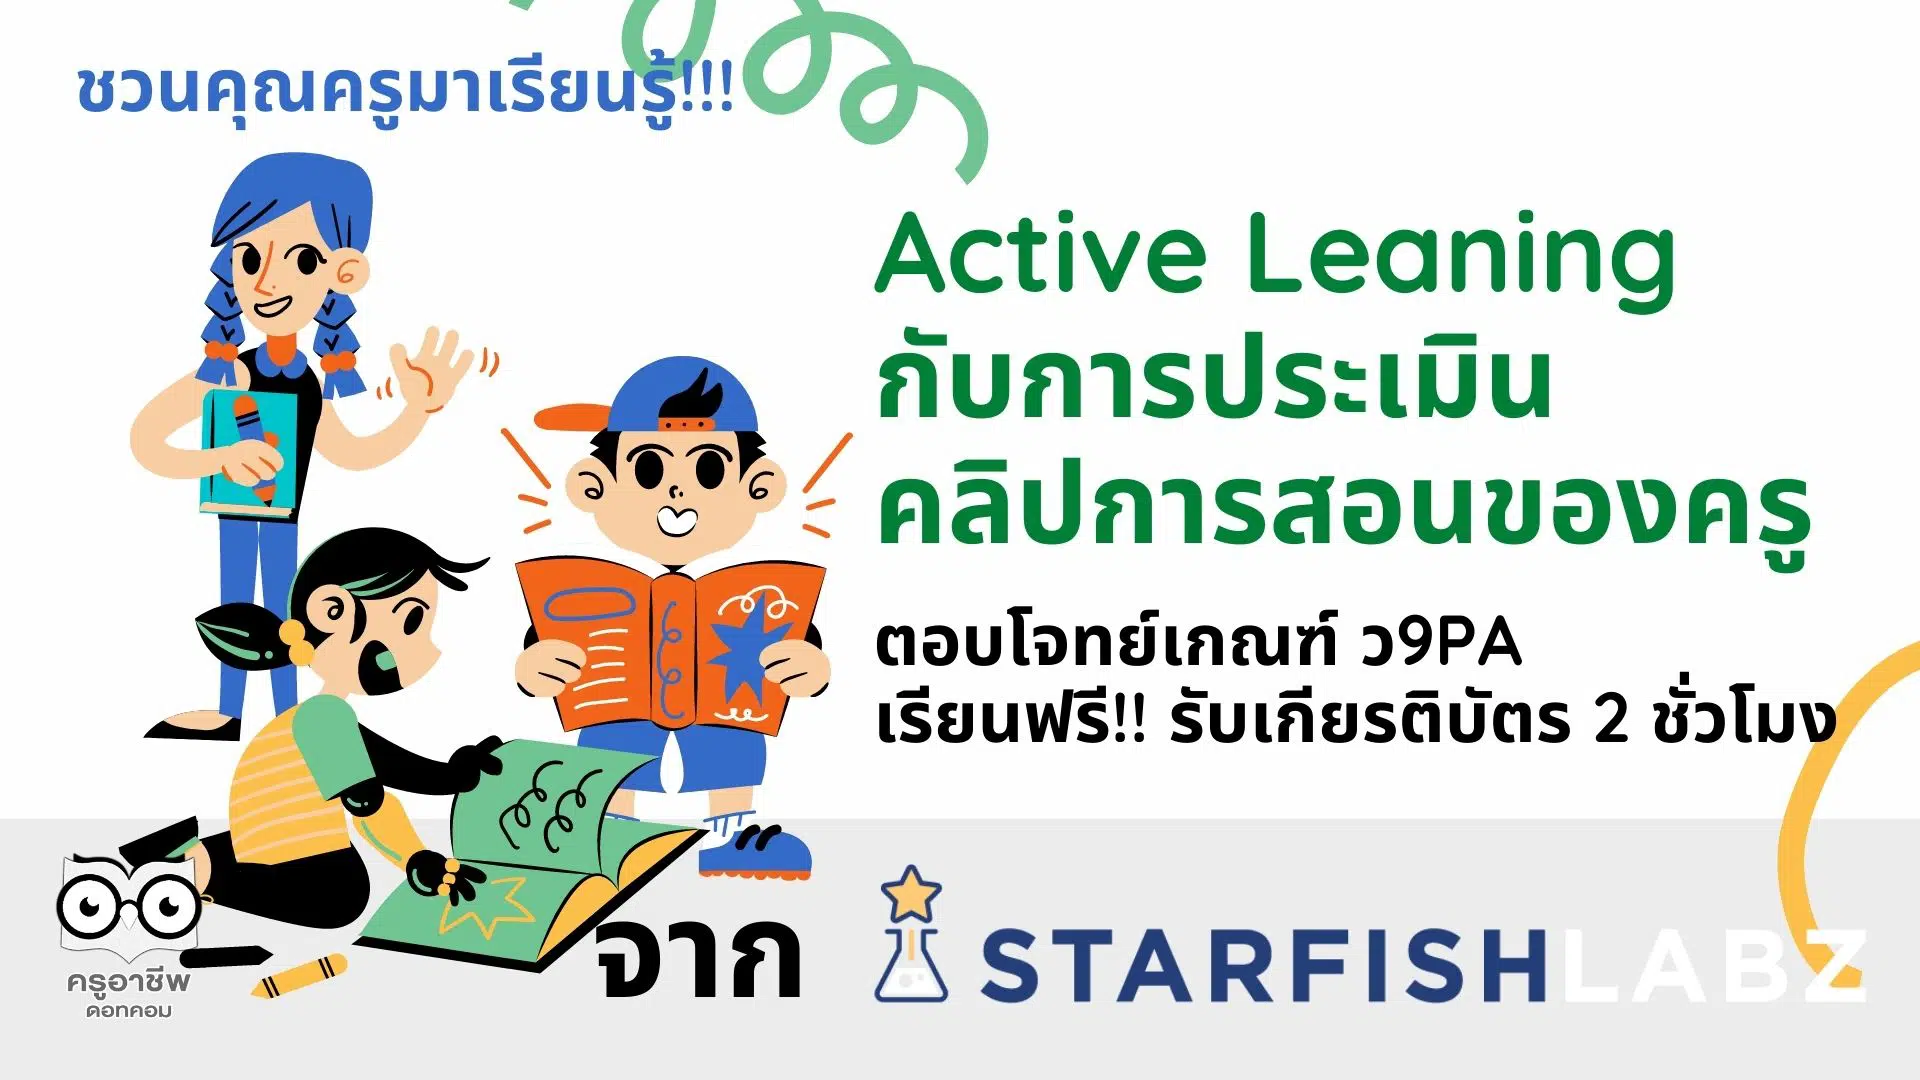 ชวนคุณครูมาเรียนรู้ Active Leaning กับการประเมินคลิปการสอนของครู ตอบโจทย์เกณฑ์ ว9PA เรียนฟรี!! รับเกียรติบัตร 2 ชั่วโมง จาก Starfish Education